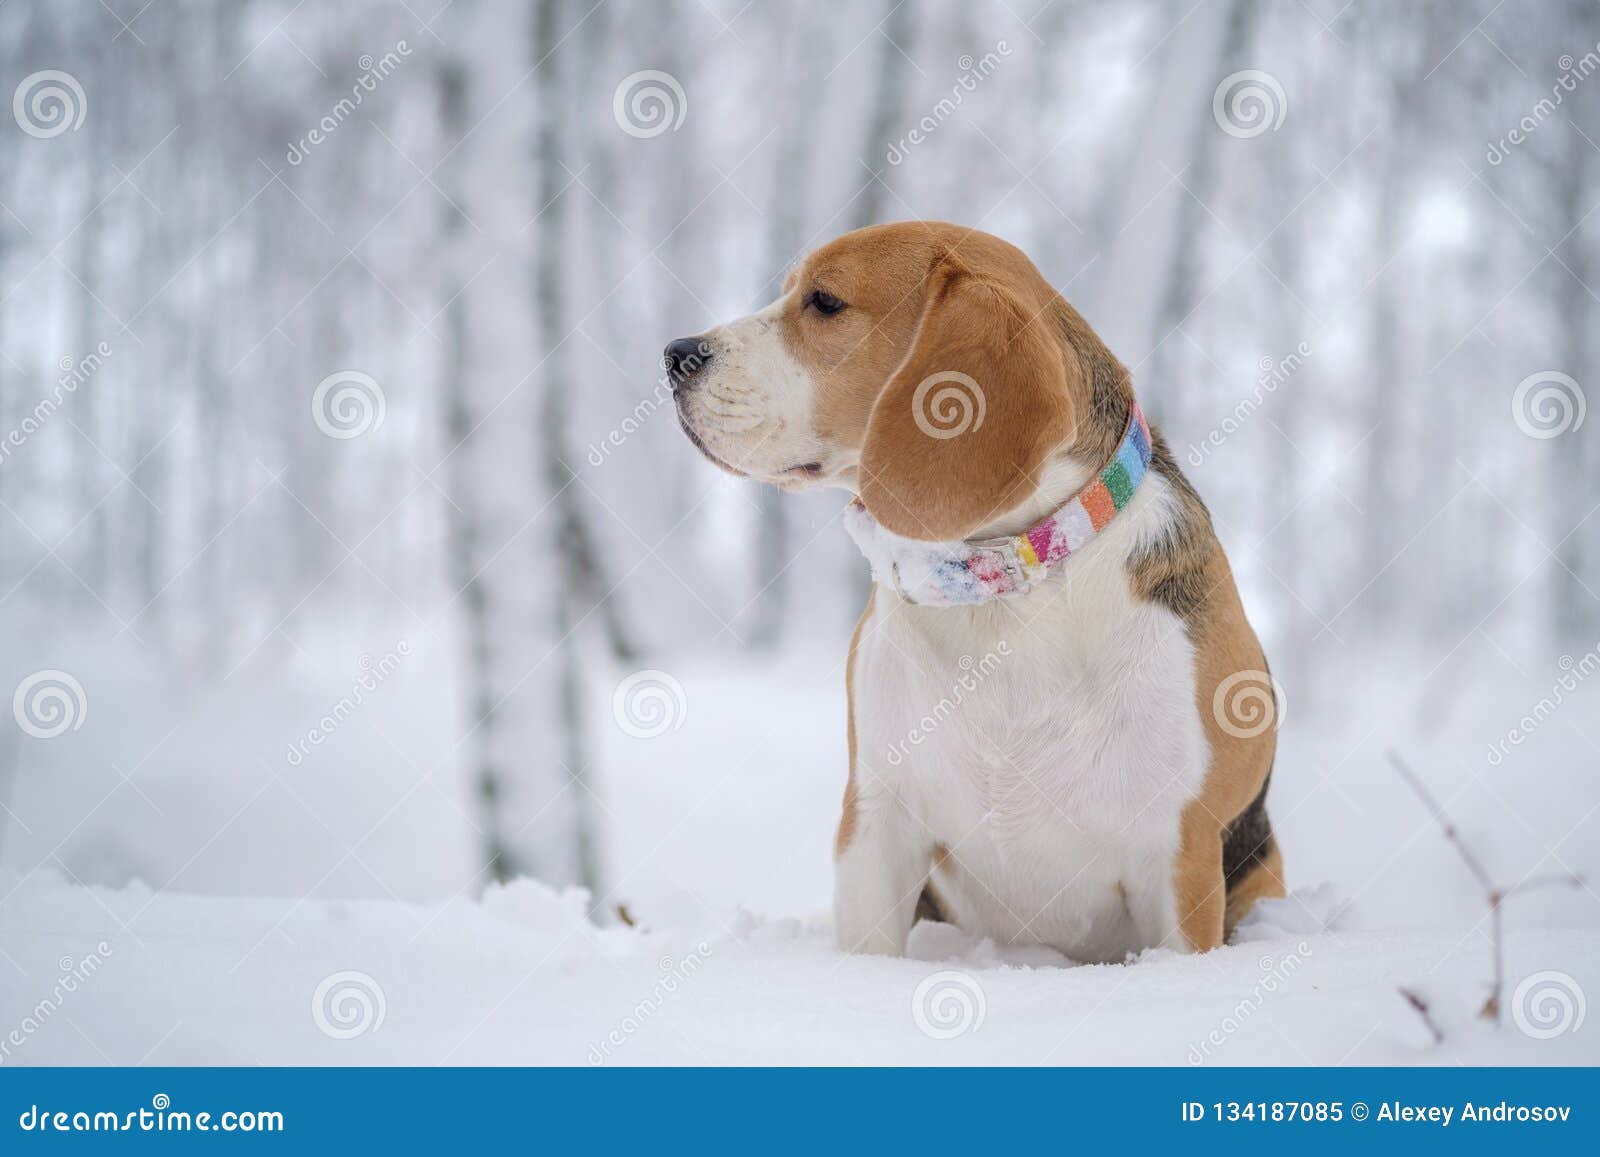 Hogyan lehet a beagle fogyni - Kutyafogyókúra: Kövér a kutya? Van megoldás!